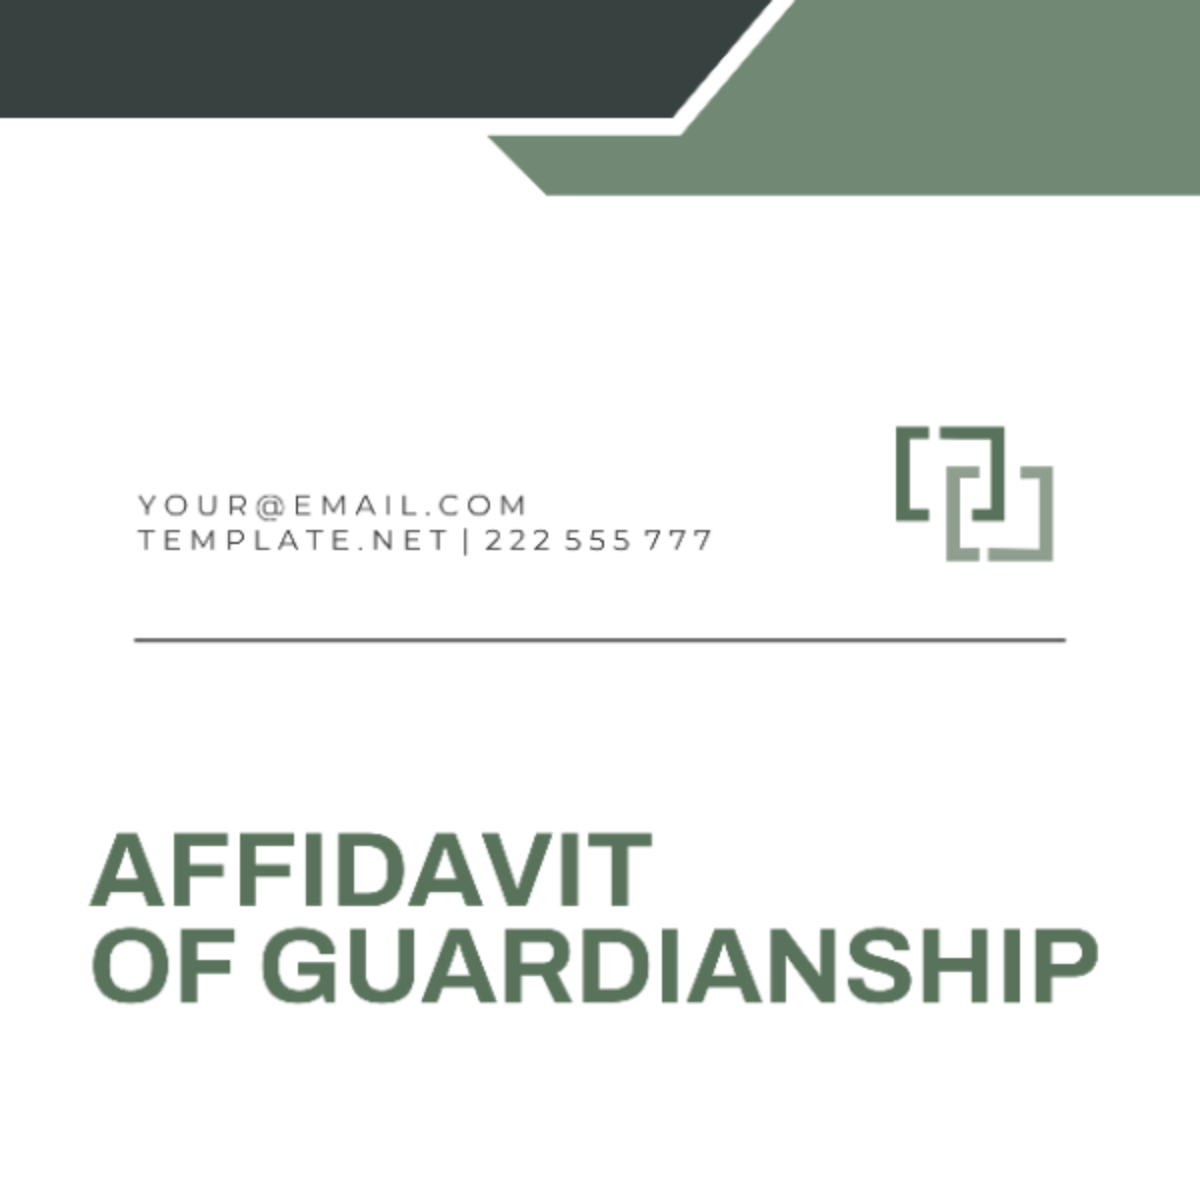 Texas Affidavit of Guardianship Template